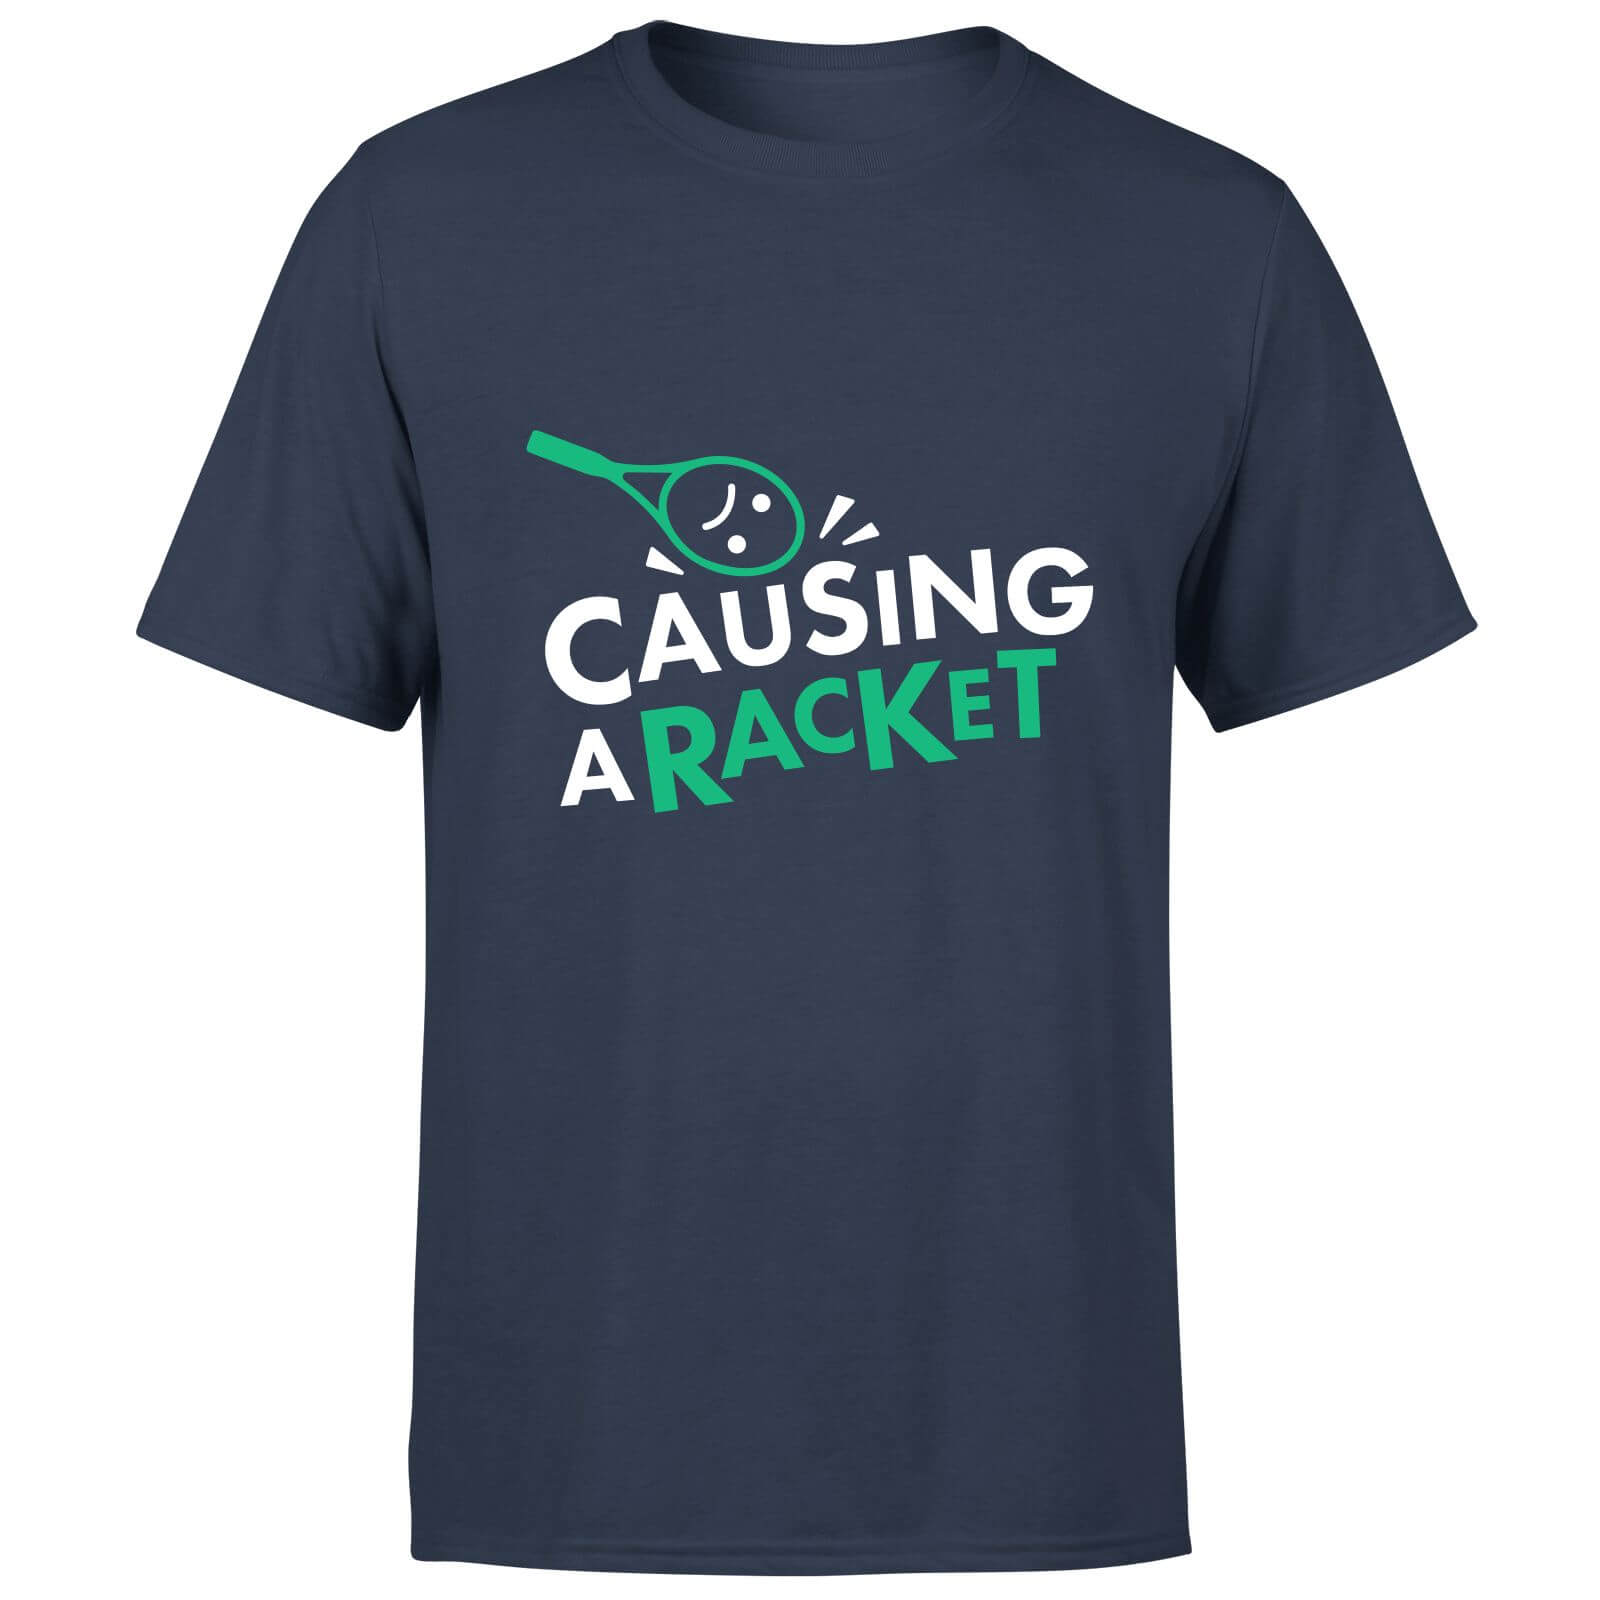 Causing a Racket T-Shirt - Navy - S - Navy